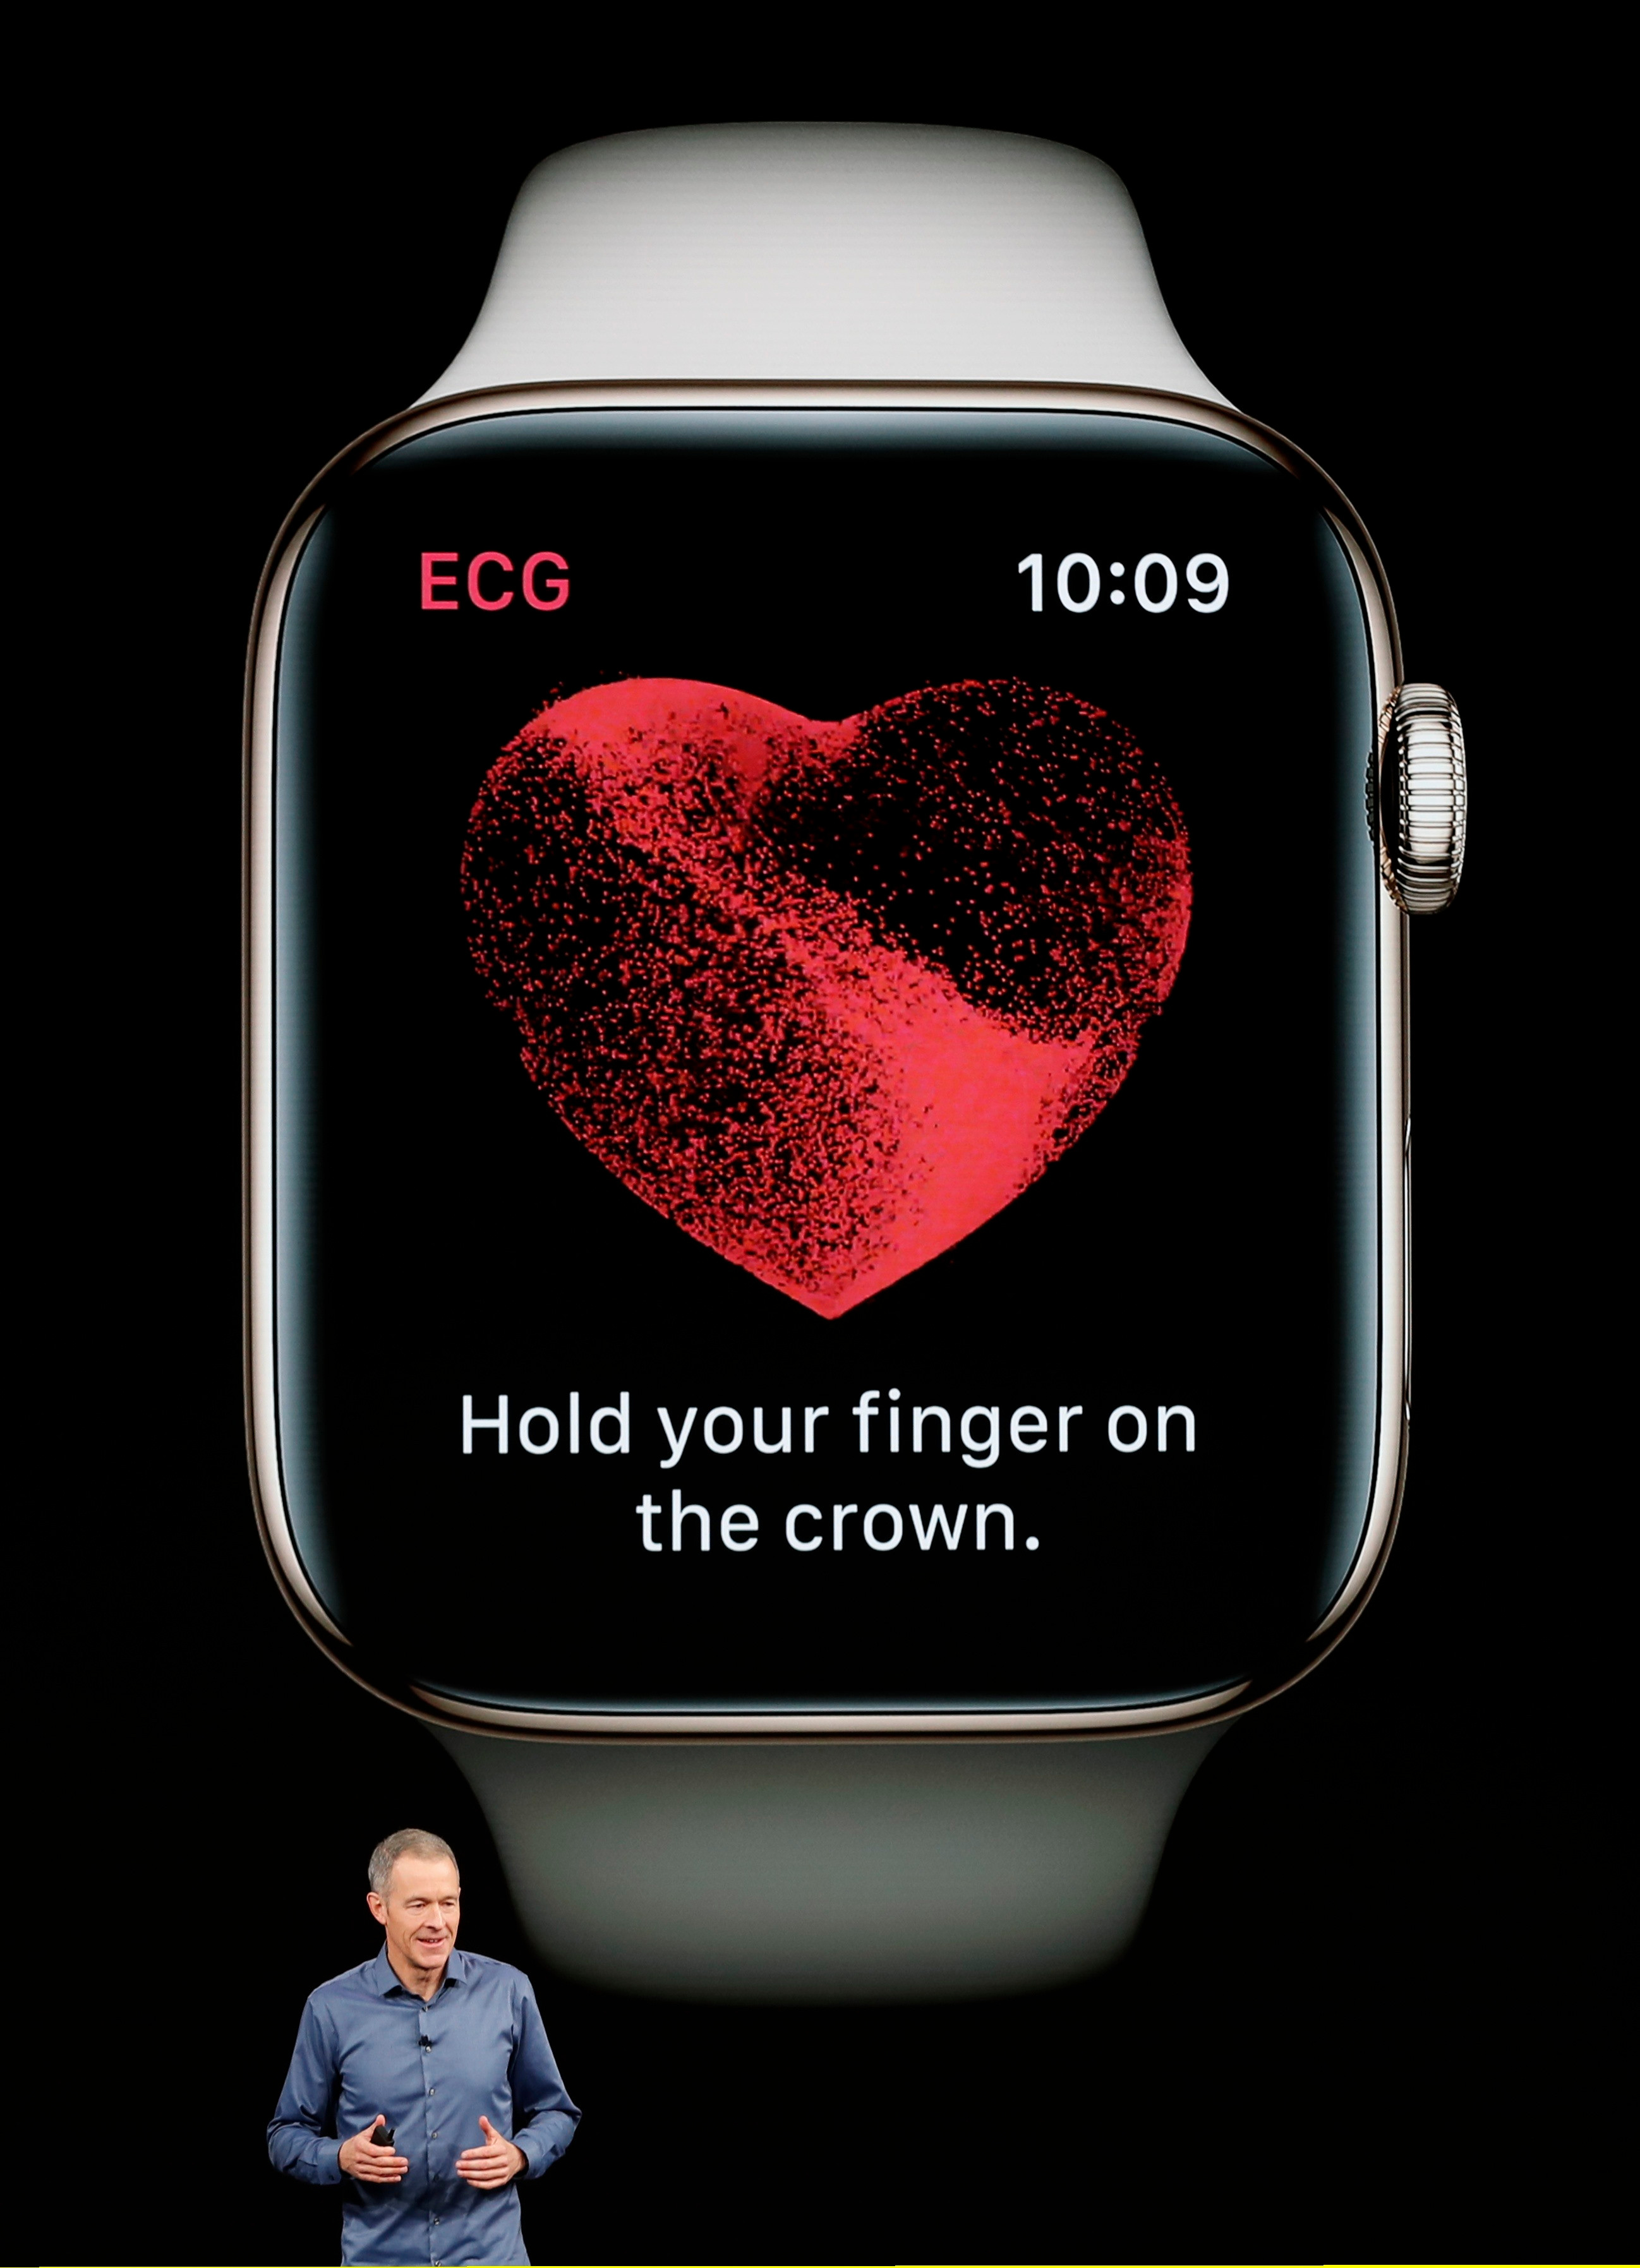   ال Apple Watch 4 لديه ميزات جديدة مثيرة للإعجاب ، بما في ذلك أداة ECG مضمنة للكشف عن بعض مشاكل القلب